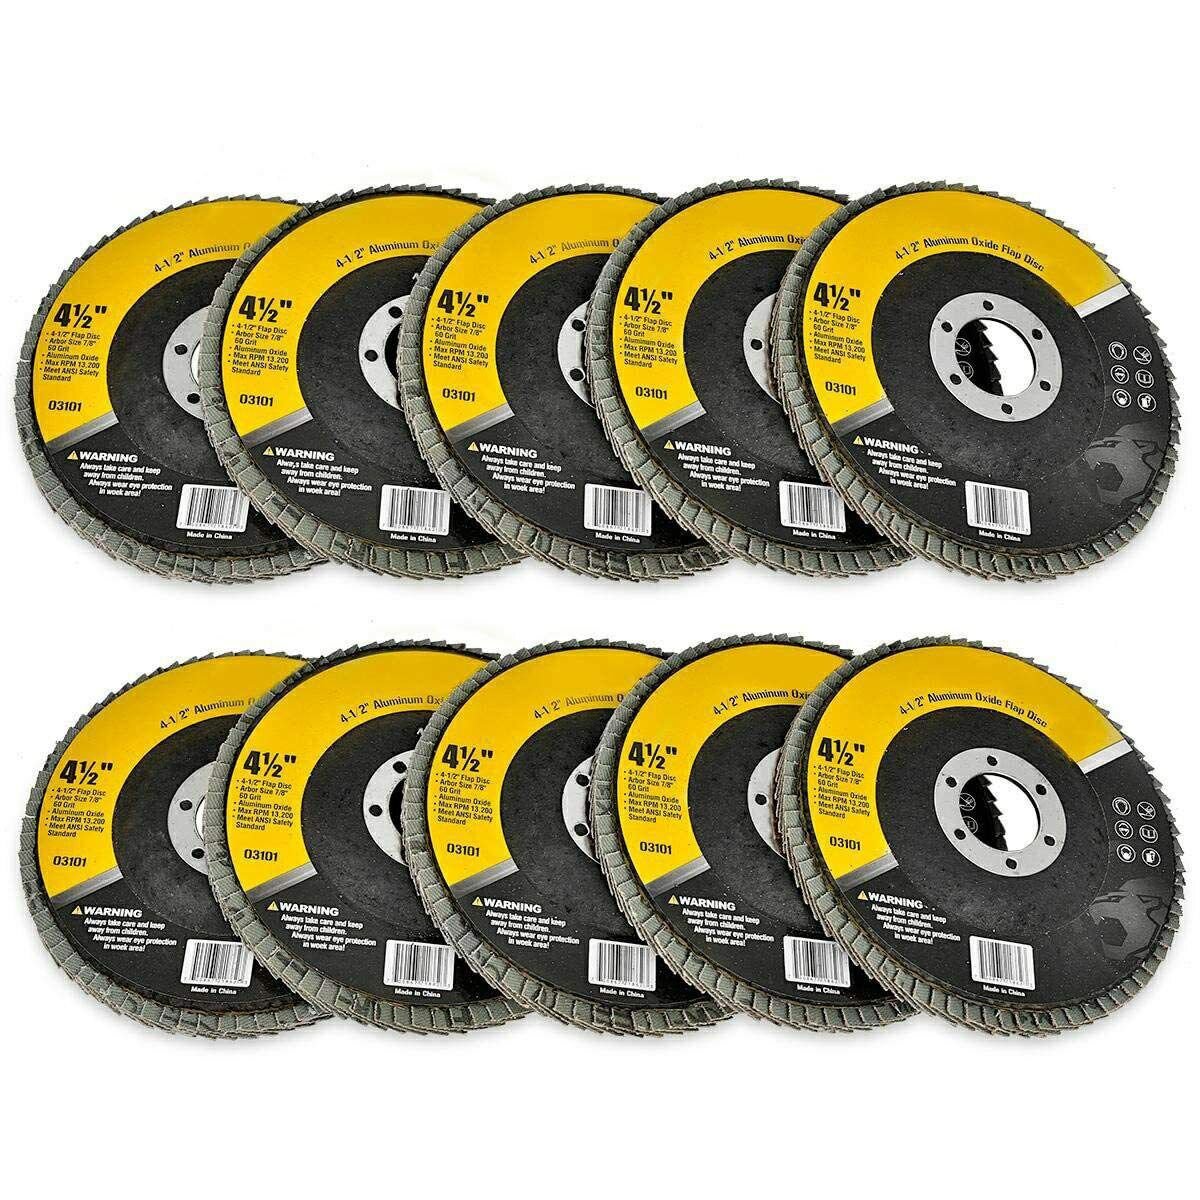 4.5"" X 7/8"" Flap Disc 4-1/2"" Discs Remove Paint Rust Clean 60 Grid